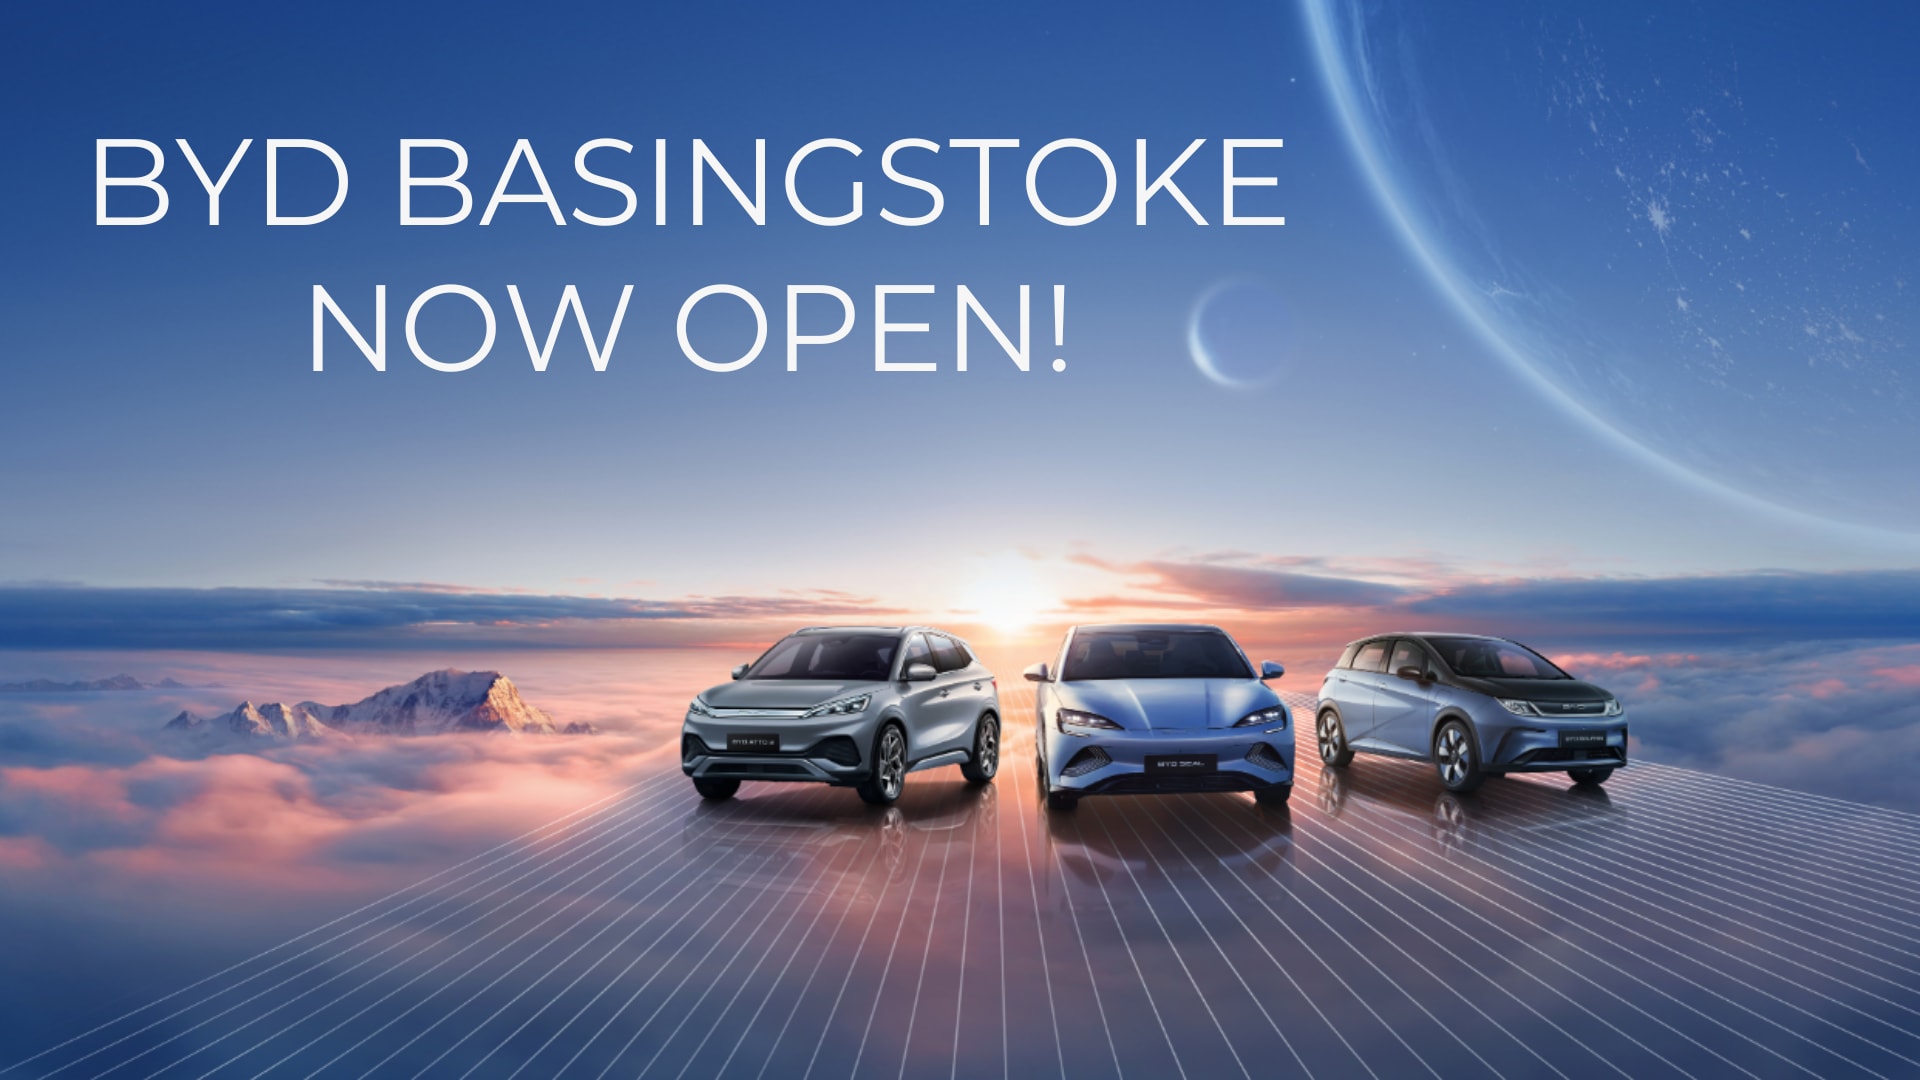 BYD Basingstoke Now Open!